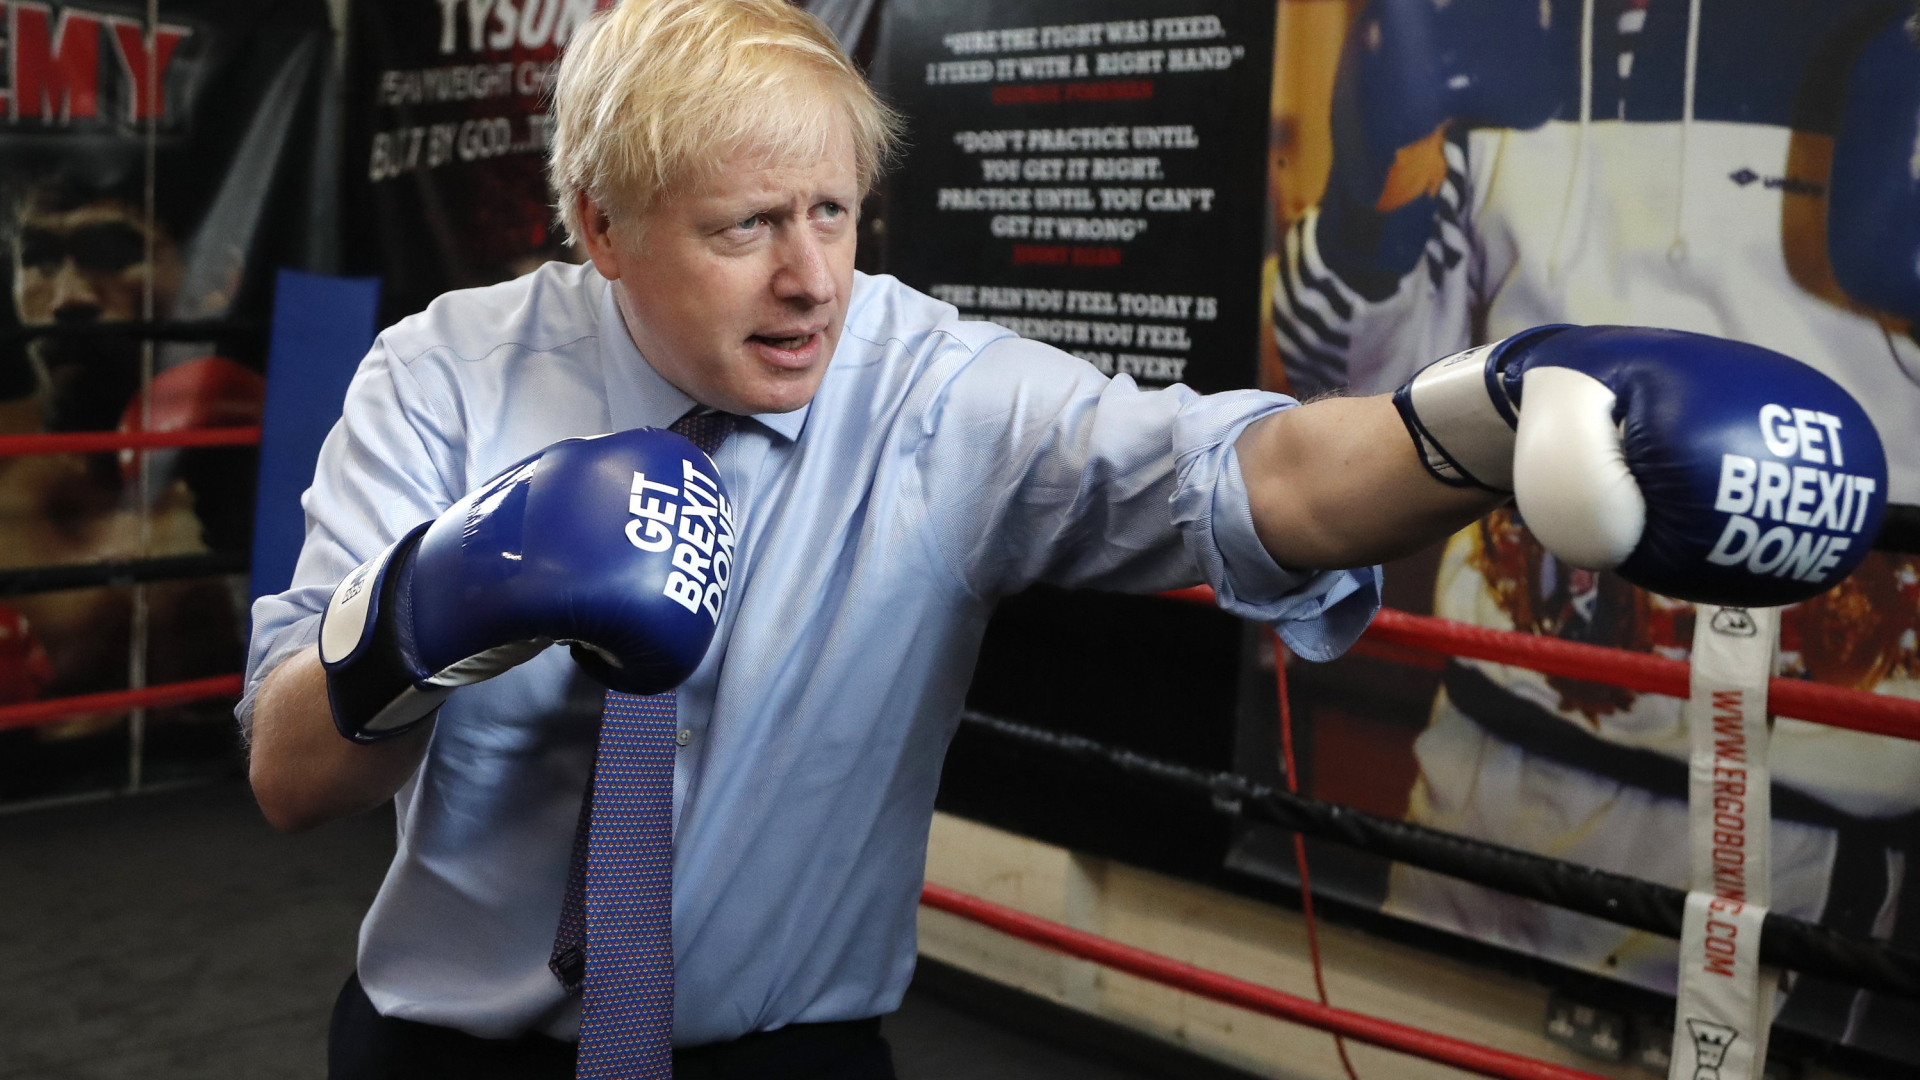 Großbritanniens Premier Boris Johnson mit Boxhandschuhen, auf die der Slogan "Get Brexit Done" gedruckt ist. | AP